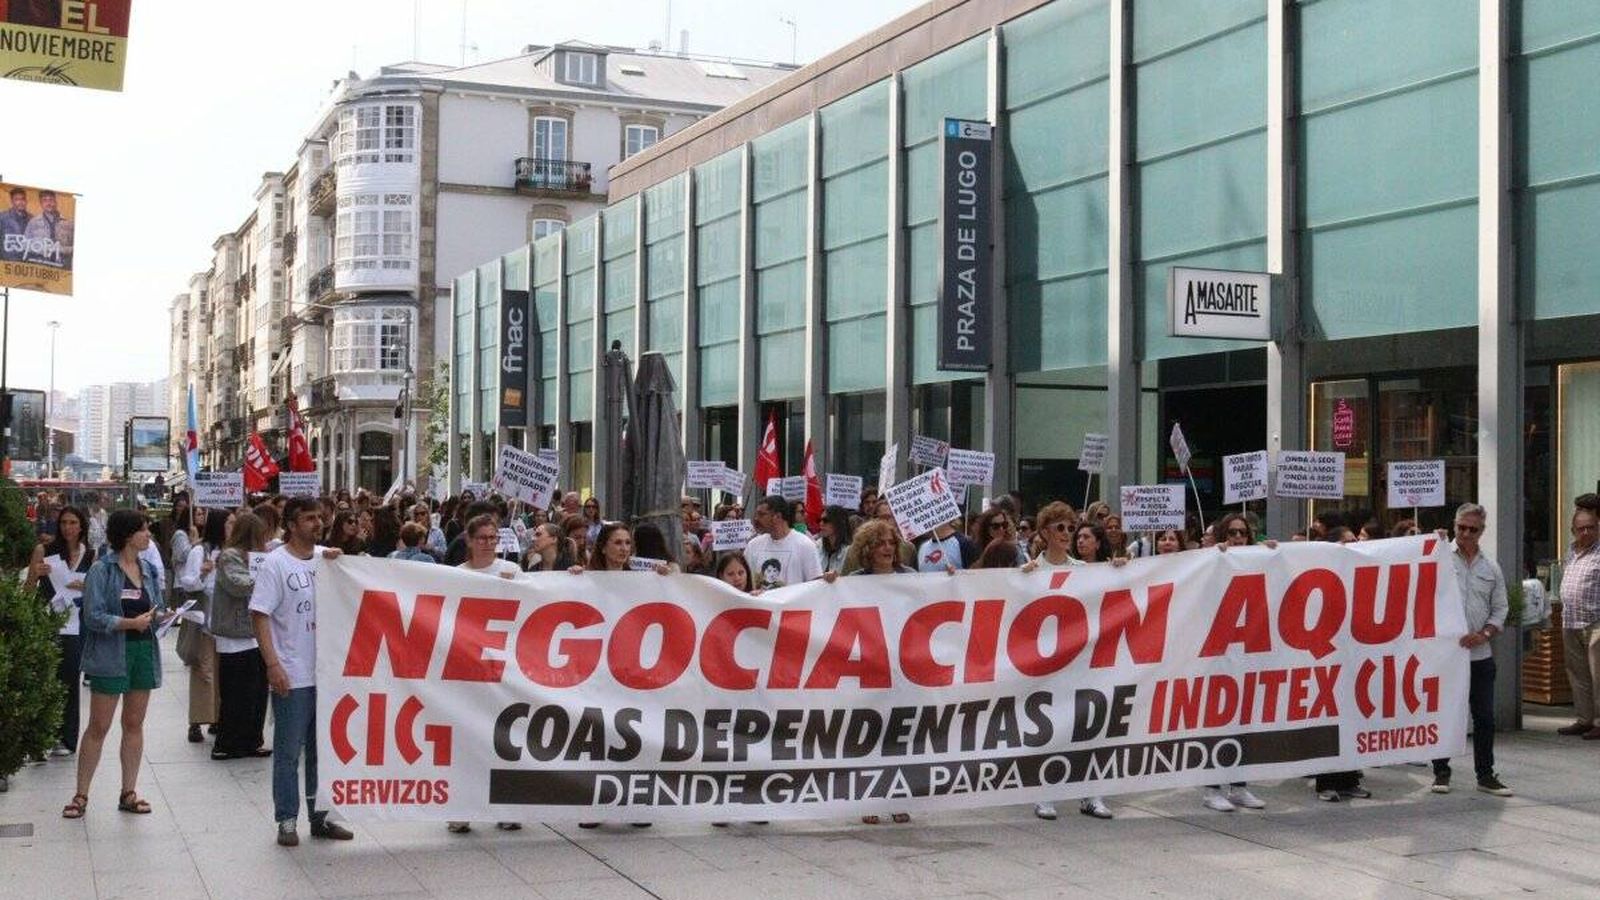 Pancarta y persiana bajada en 'casa': la 'rebelión' de las dependientas de Inditex en A Coruña